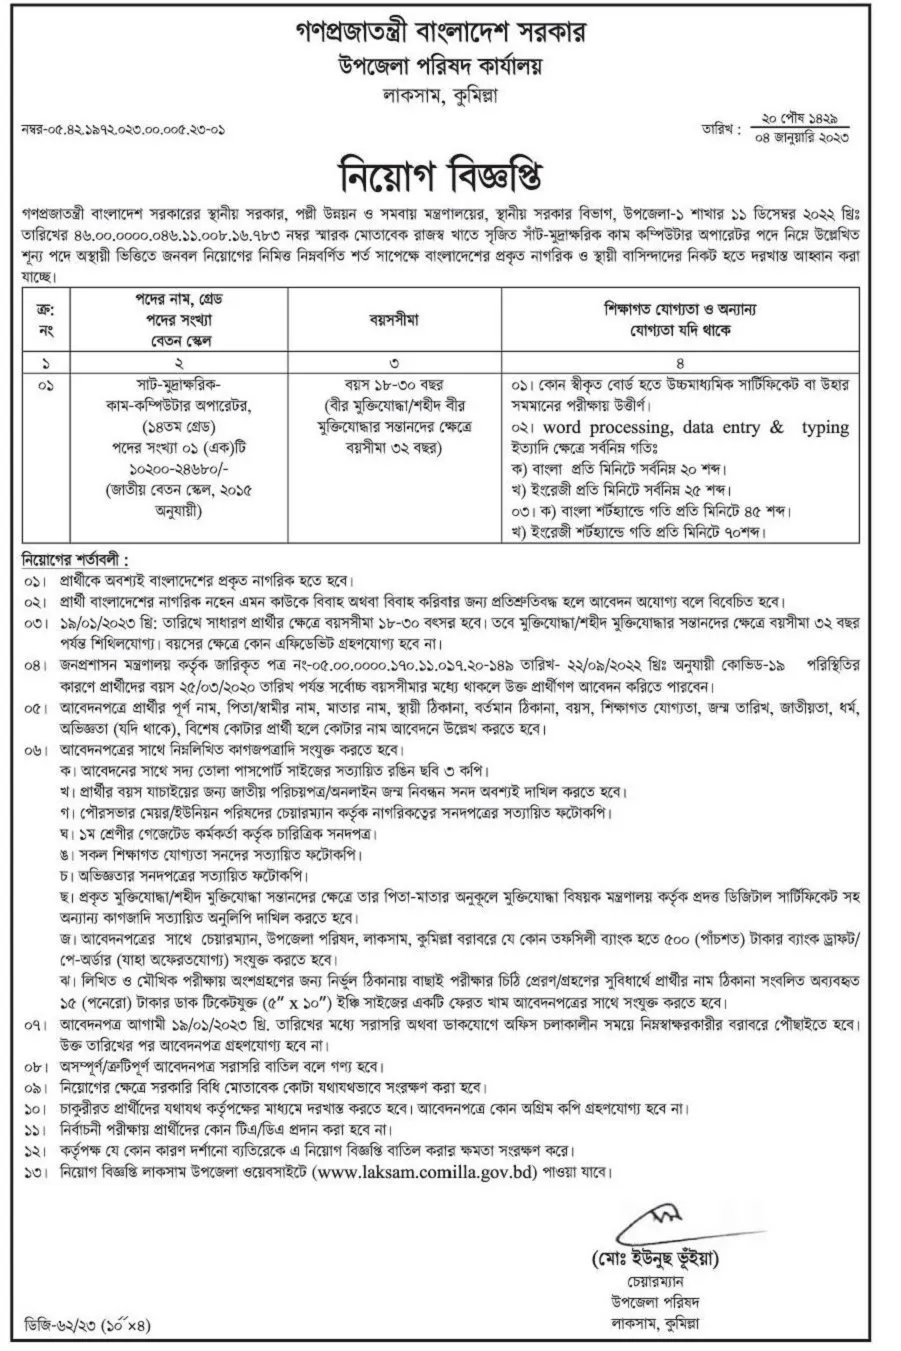 লাকসাম কুমিল্লা উপজেলা পরিষদের চাকরির বিজ্ঞপ্তি ২০২৩ - Laksam Comilla Upazila Parishad Job Circular 2023